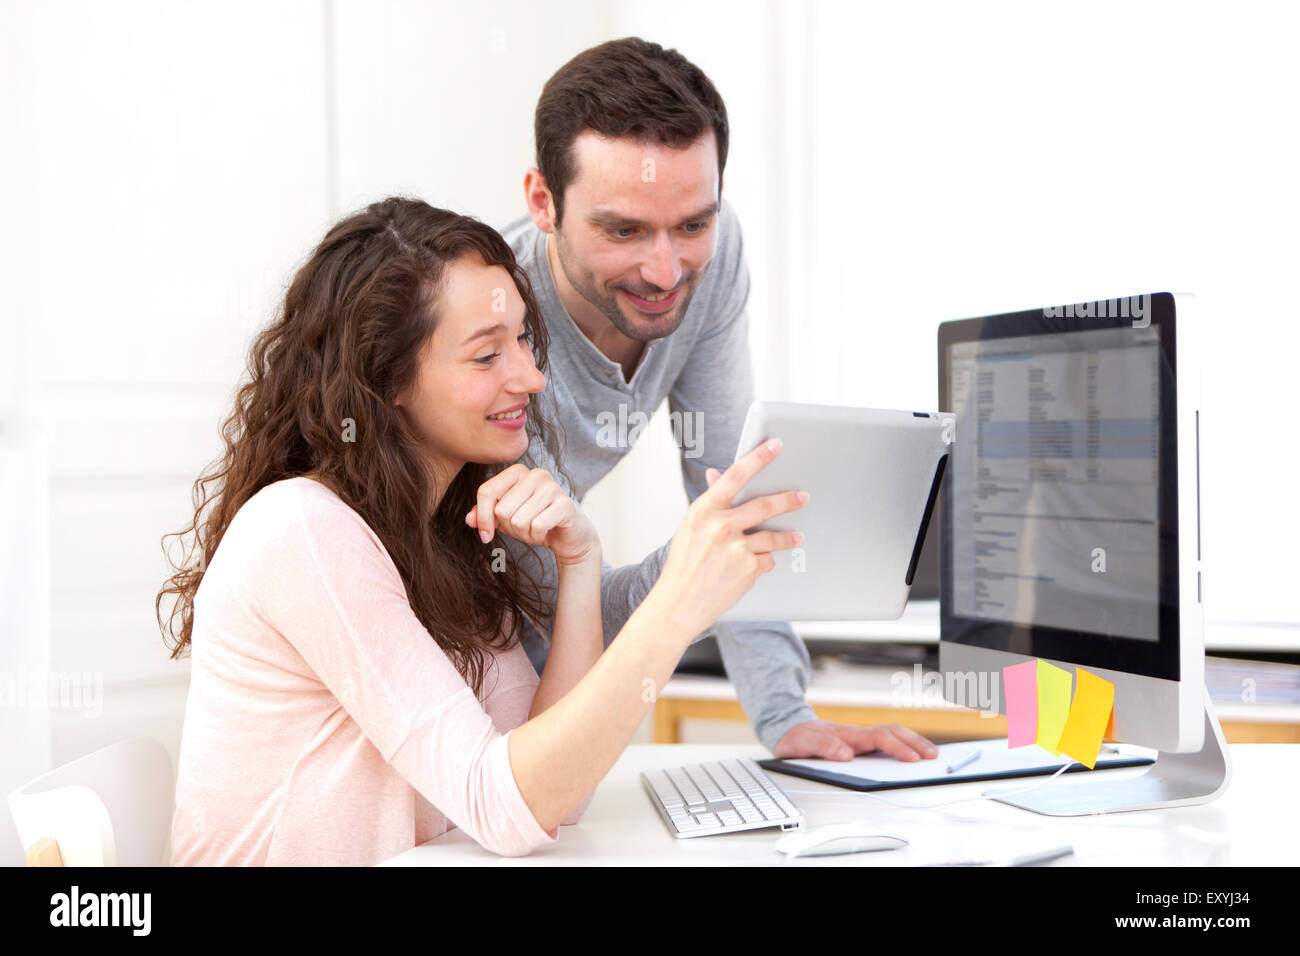 Vista de la mujer que trabaja en tablet con su compañero Foto de stock